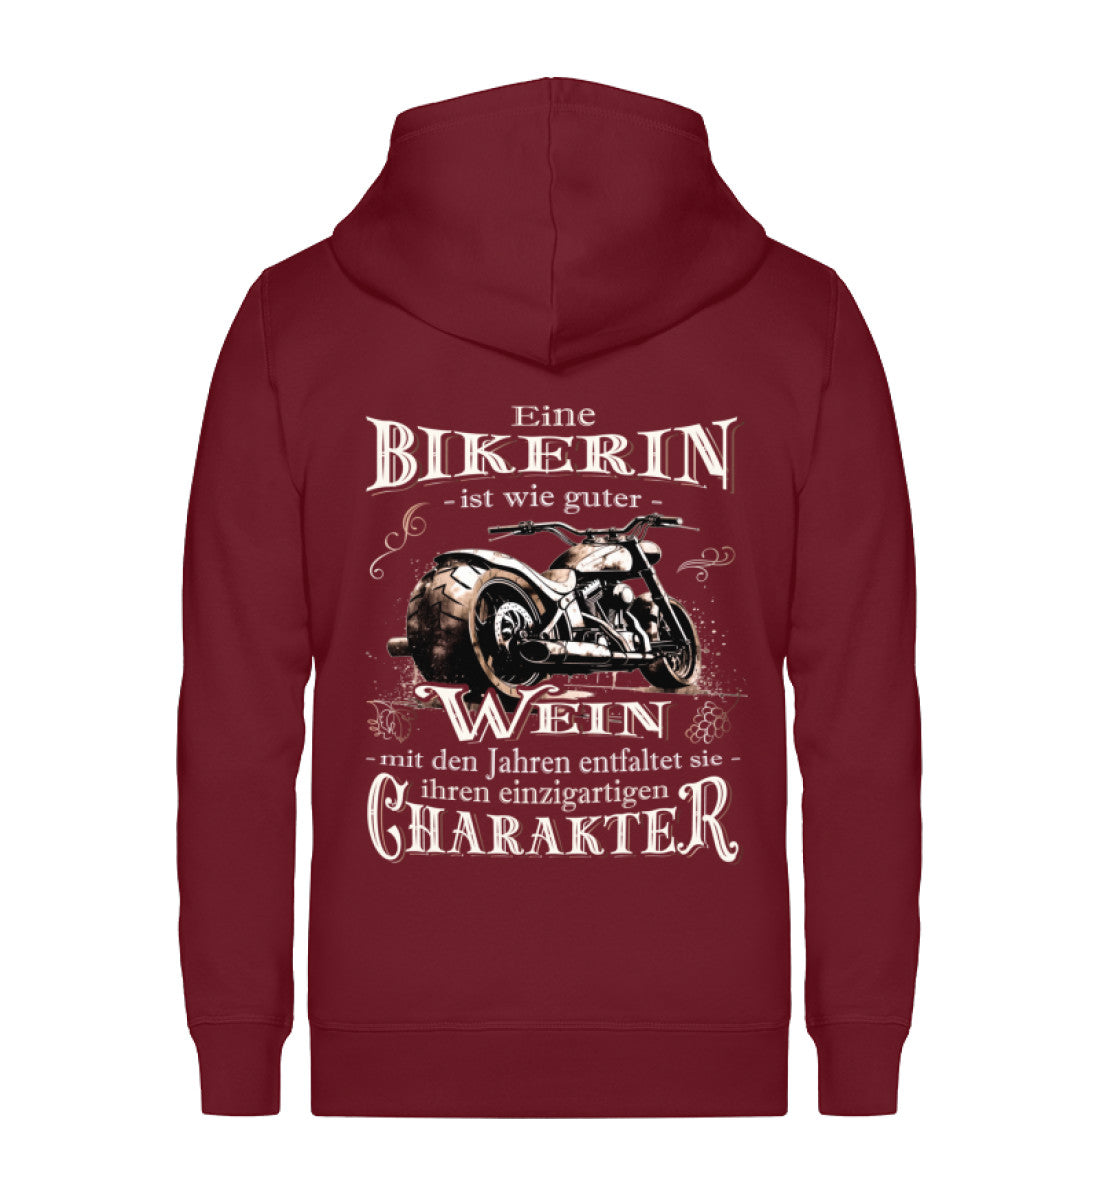 Eine Bikerin Reißverschluss-Jacke für Motorradfahrerinnen von Wingbikers mit dem Aufdruck, Eine Bikerin ist wie guter Wein - mit den Jahren entfaltet sie ihren einzigartigen Charakter - in burgunder weinrot.